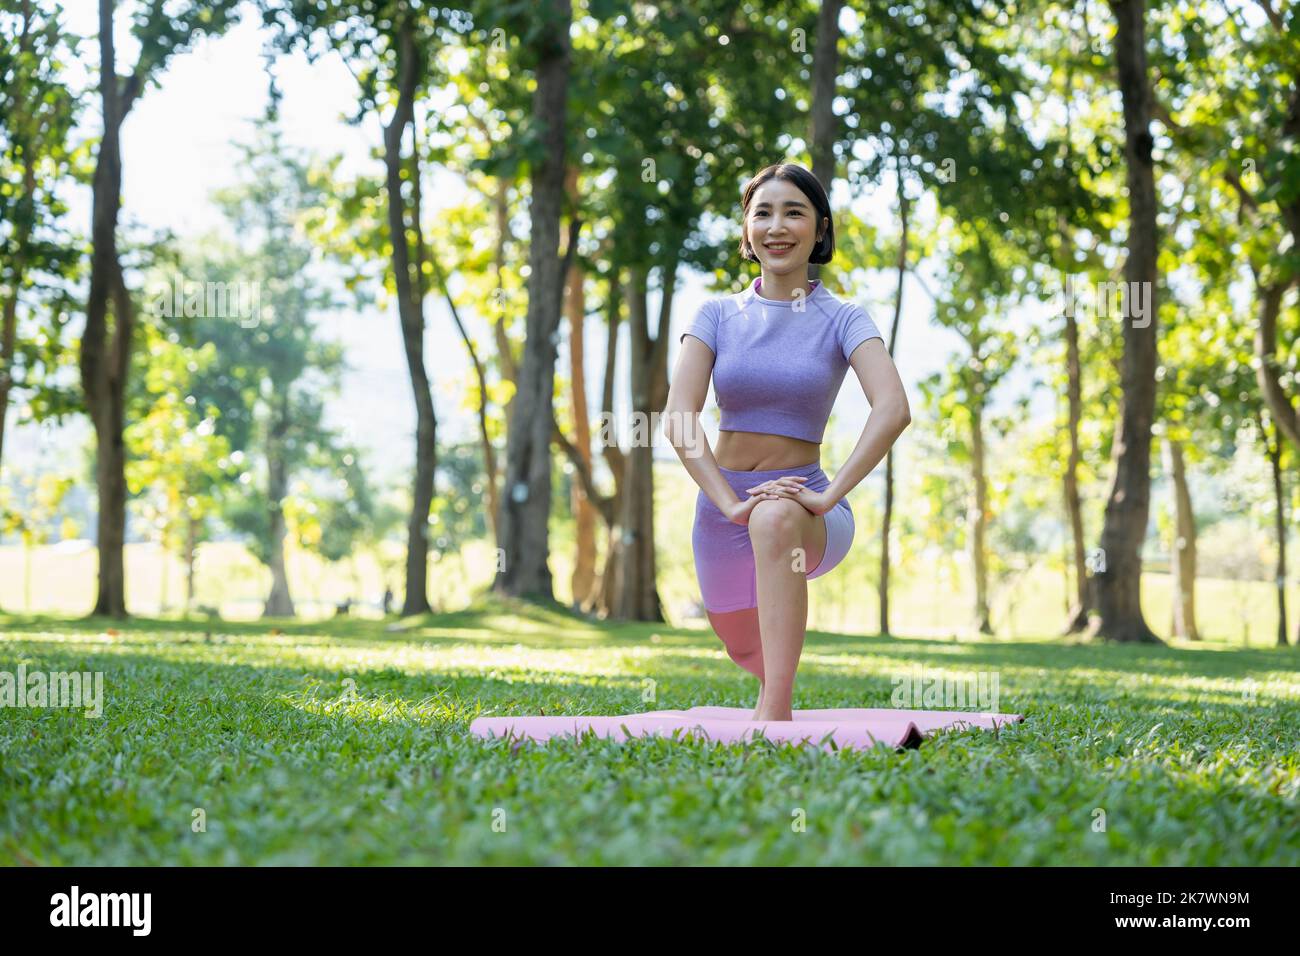 Reife, gesunde Menschen, die Yoga im Park machen. Asiatische Frau, die mit einer Yogamatte auf grünem Gras trainiert. Stockfoto